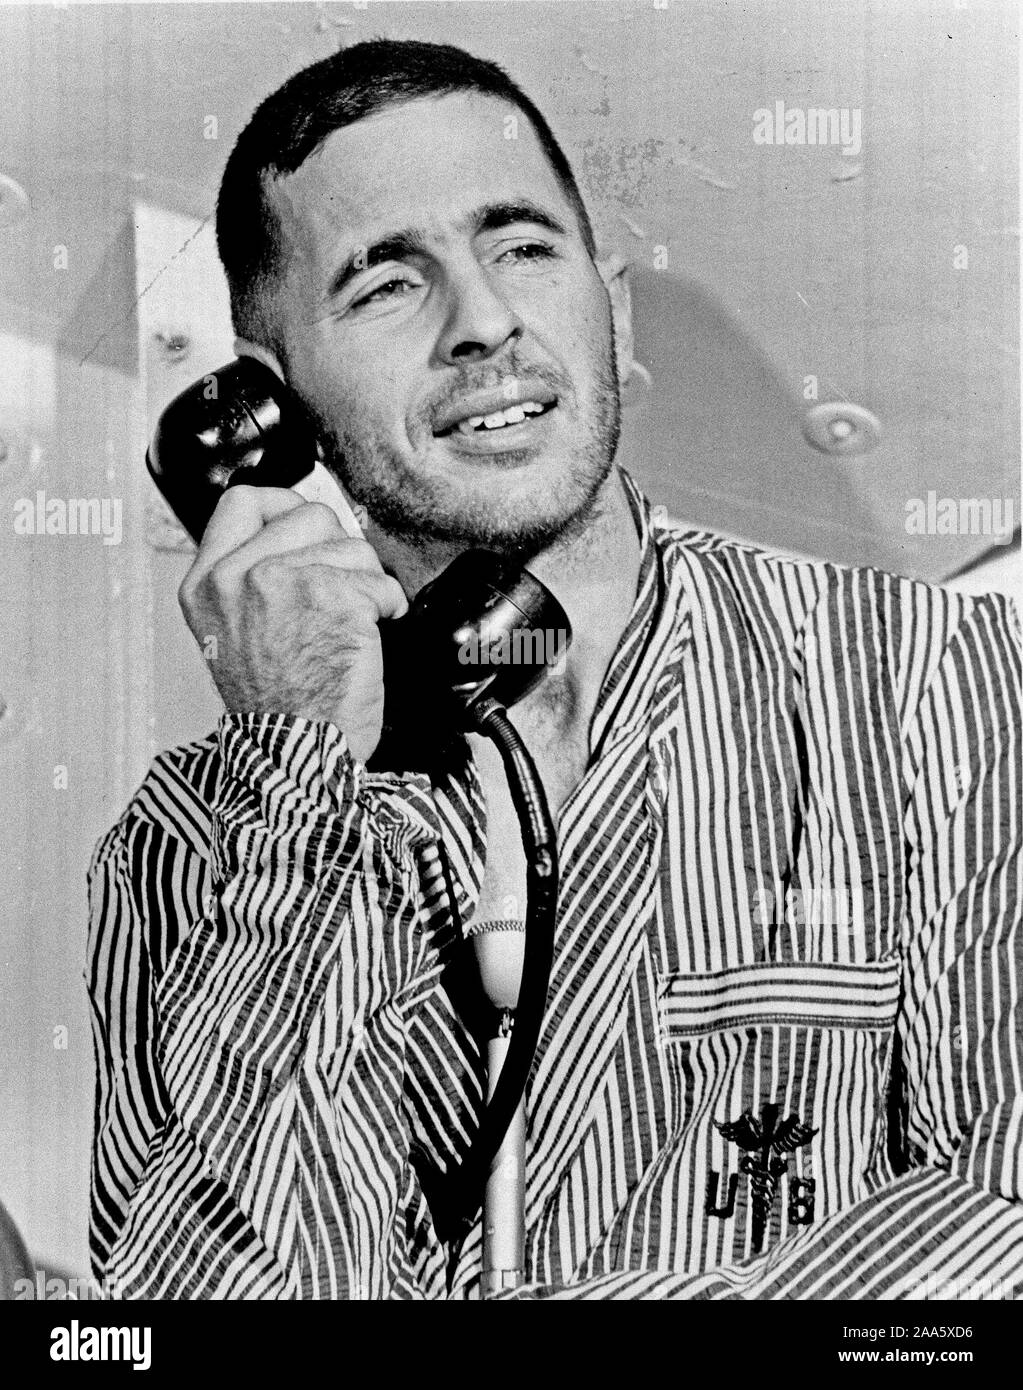 1968 - Apollo 8 astronauta William Anders, modulo lunare (LM) pilota del primo presidiato di Saturno V volo spaziale in orbita lunare, accettato una chiamata telefonica da parte degli Stati Uniti Il presidente Lyndon B. Johnson prima del lancio. Foto Stock